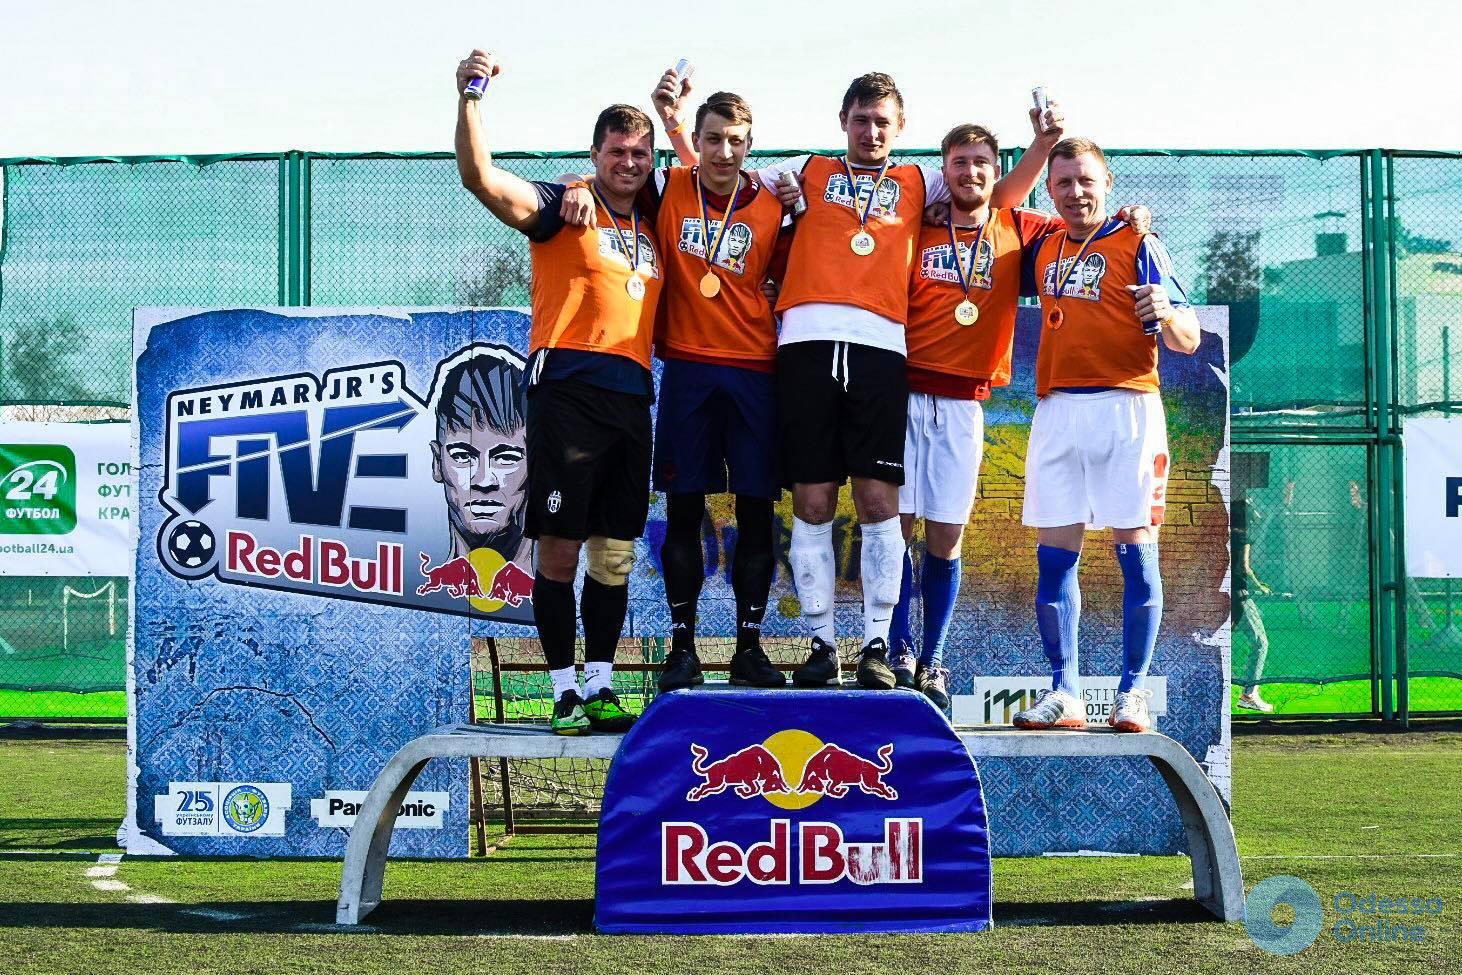 В Одессе состоялся второй отборочный этап всемирно известного мини-футбольного турнира «Neymar Jr’s Five»